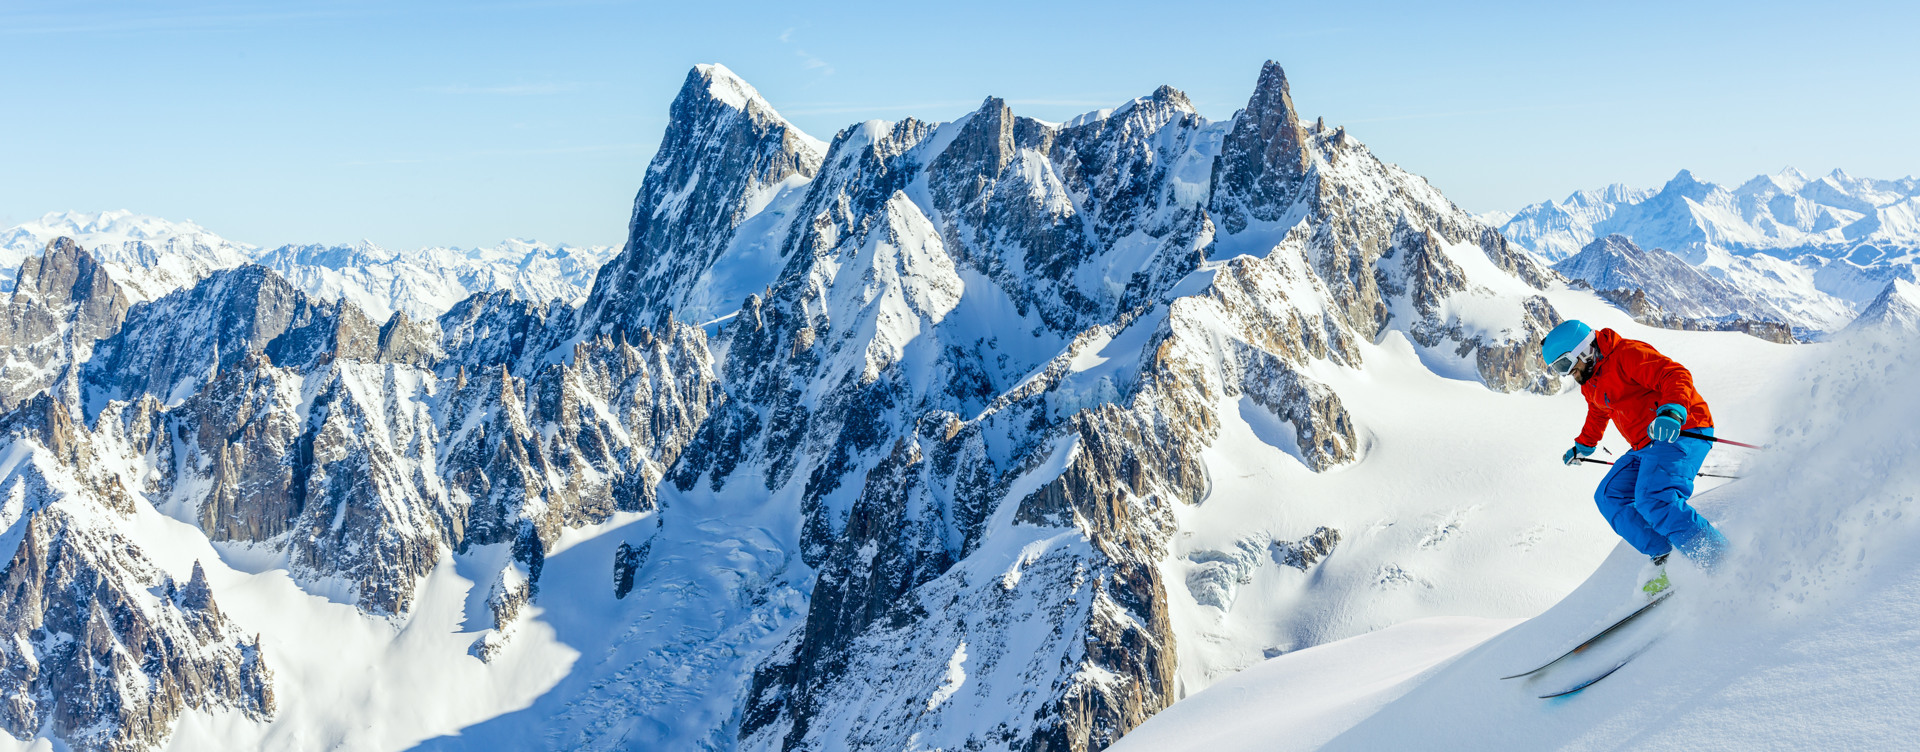 Disfruta de las actividades de invierno
en los Alpes franceses